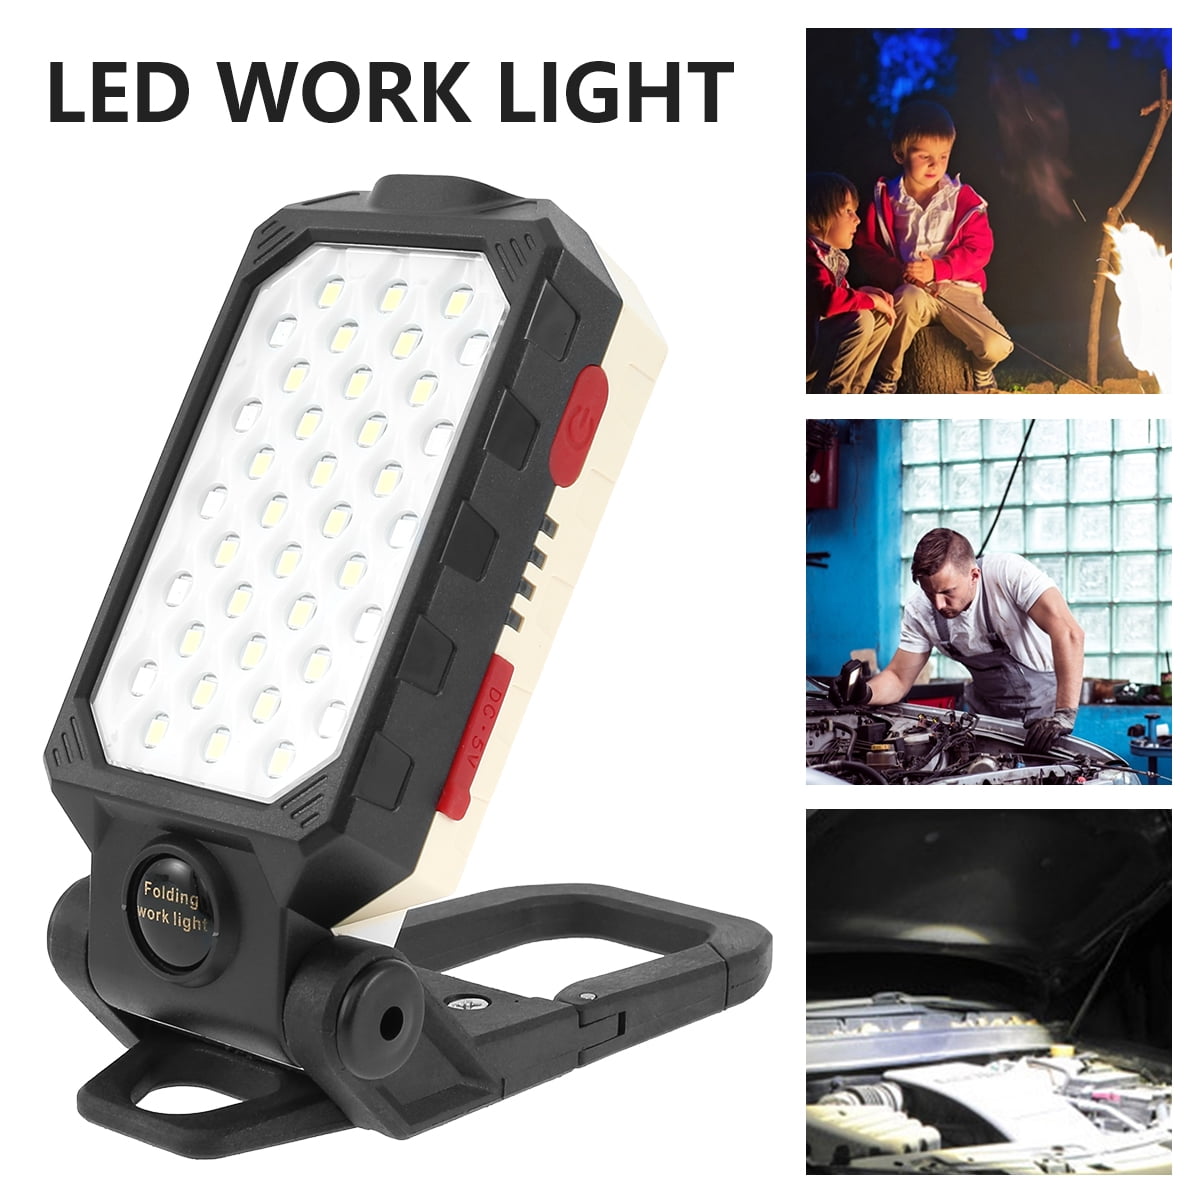 BRIGHT 30 LED LIGHT FLOOD LAMP+7 LED FLASHLIGHT+BUILT IN MAGNET+SWIVEL HANGING 